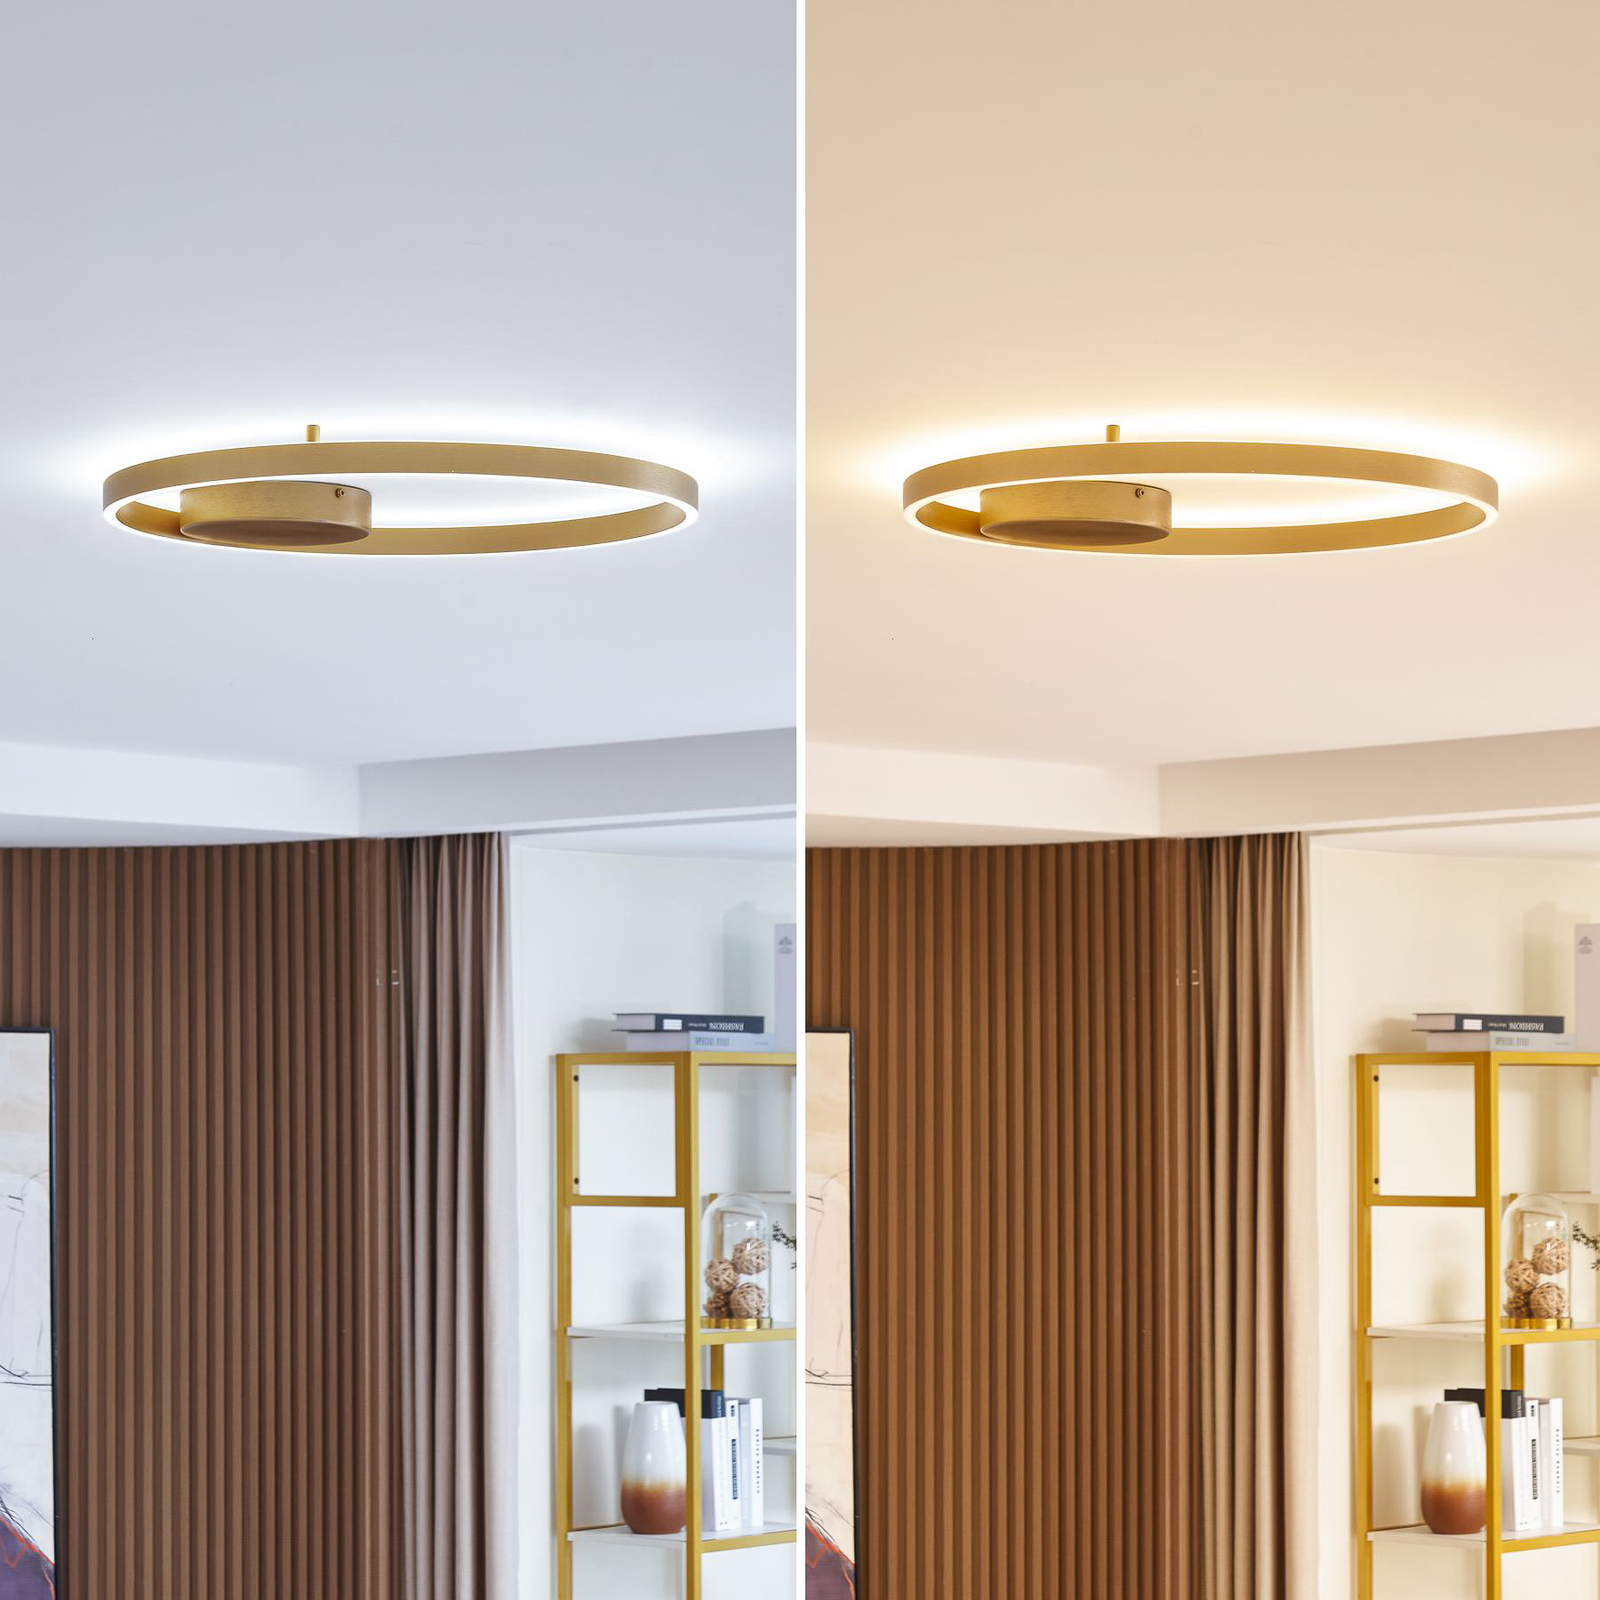 Lucande Smart LED ceiling light Moise, gold, CCT, Tuya